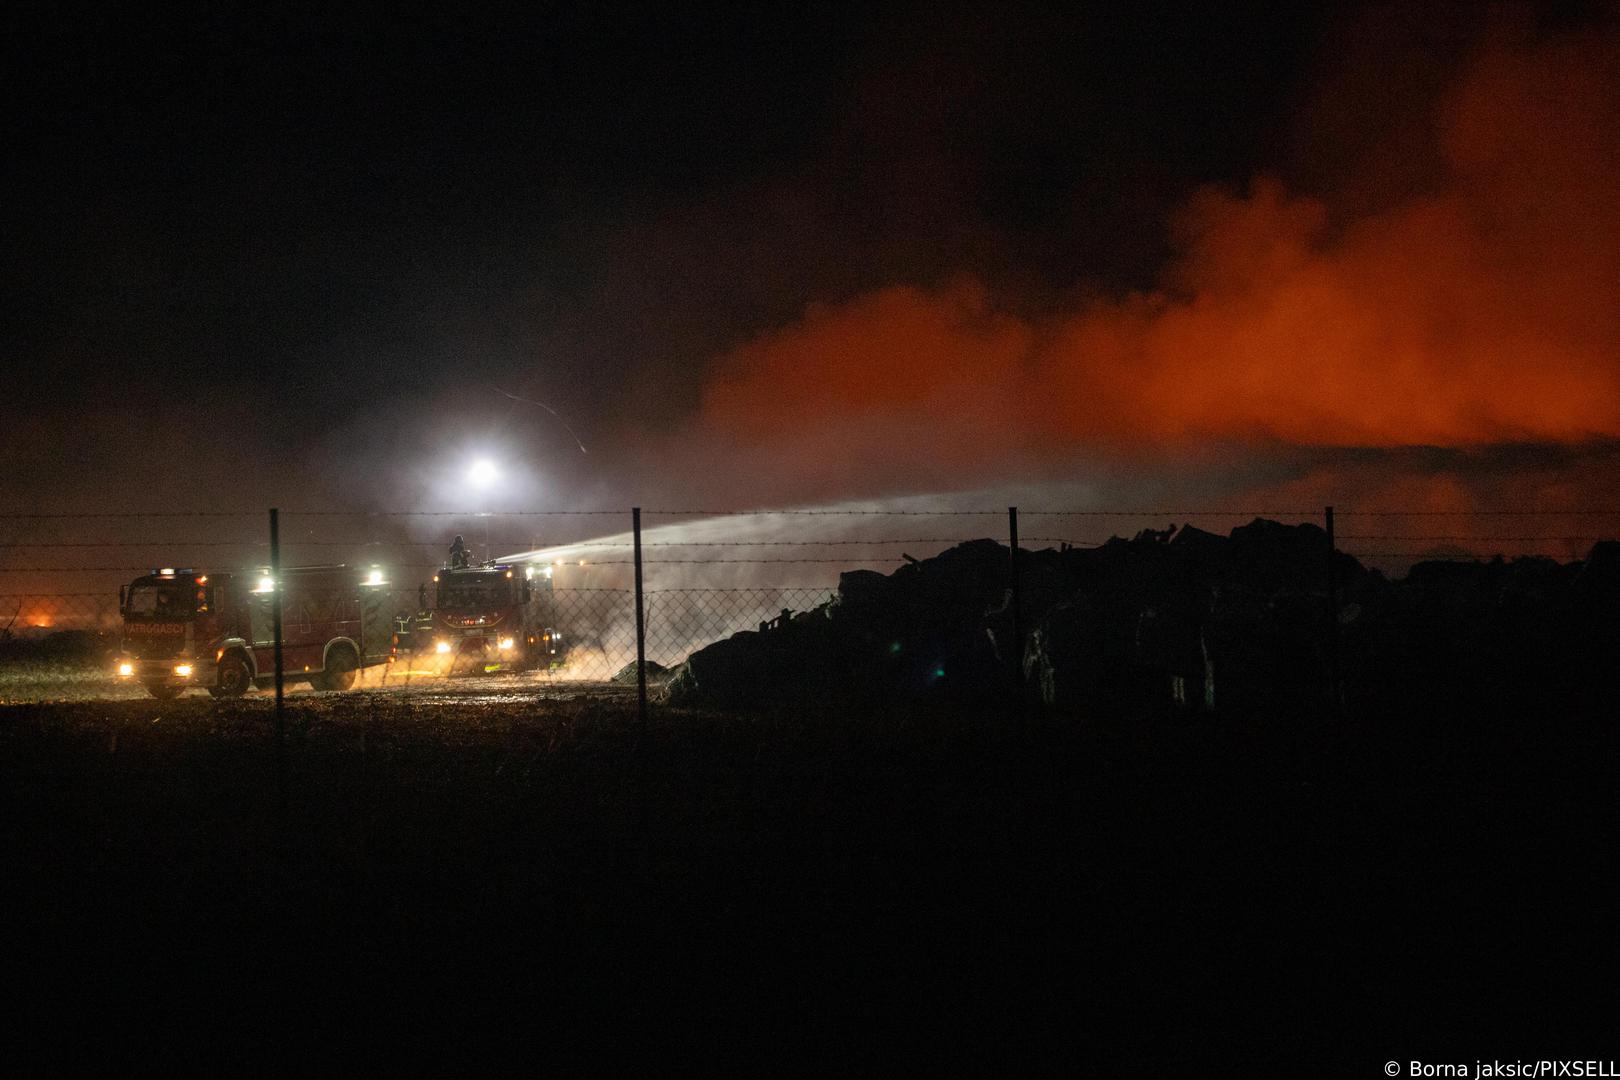 Stup dima iz tvornice se i dalje širi, a na požarište su tijekom dana pristizali kamioni puni zemlje s kojima se zatrpavalo opožareno područje. Tijekom dana na požarištu se pojavila i pijavica. 